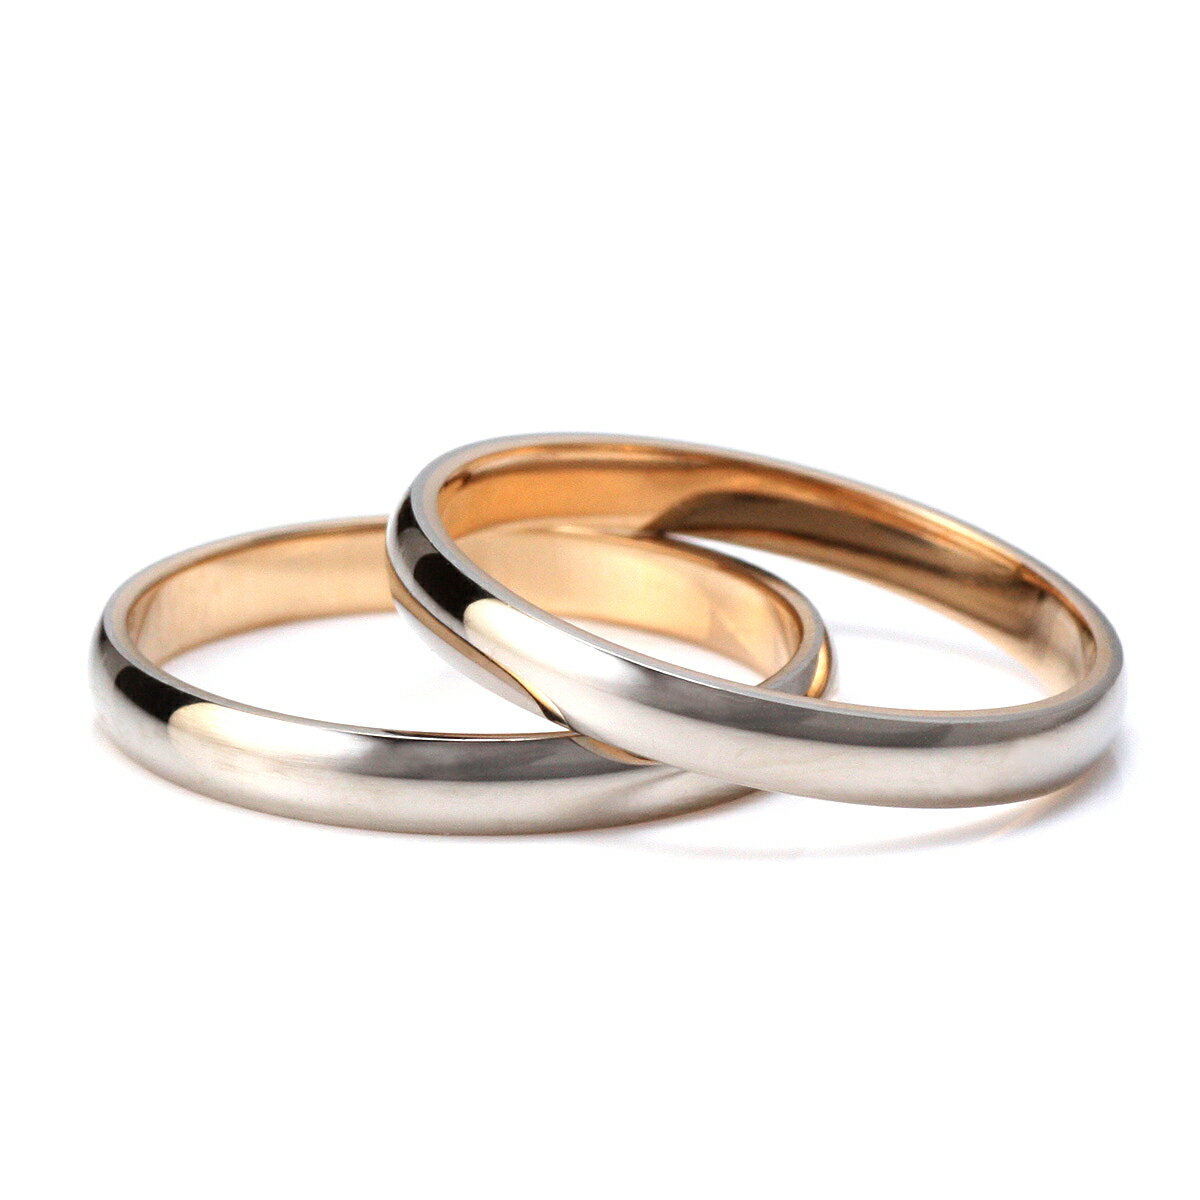 結婚指輪 マリッジリング ペアリング ホワイトゴ...の商品画像